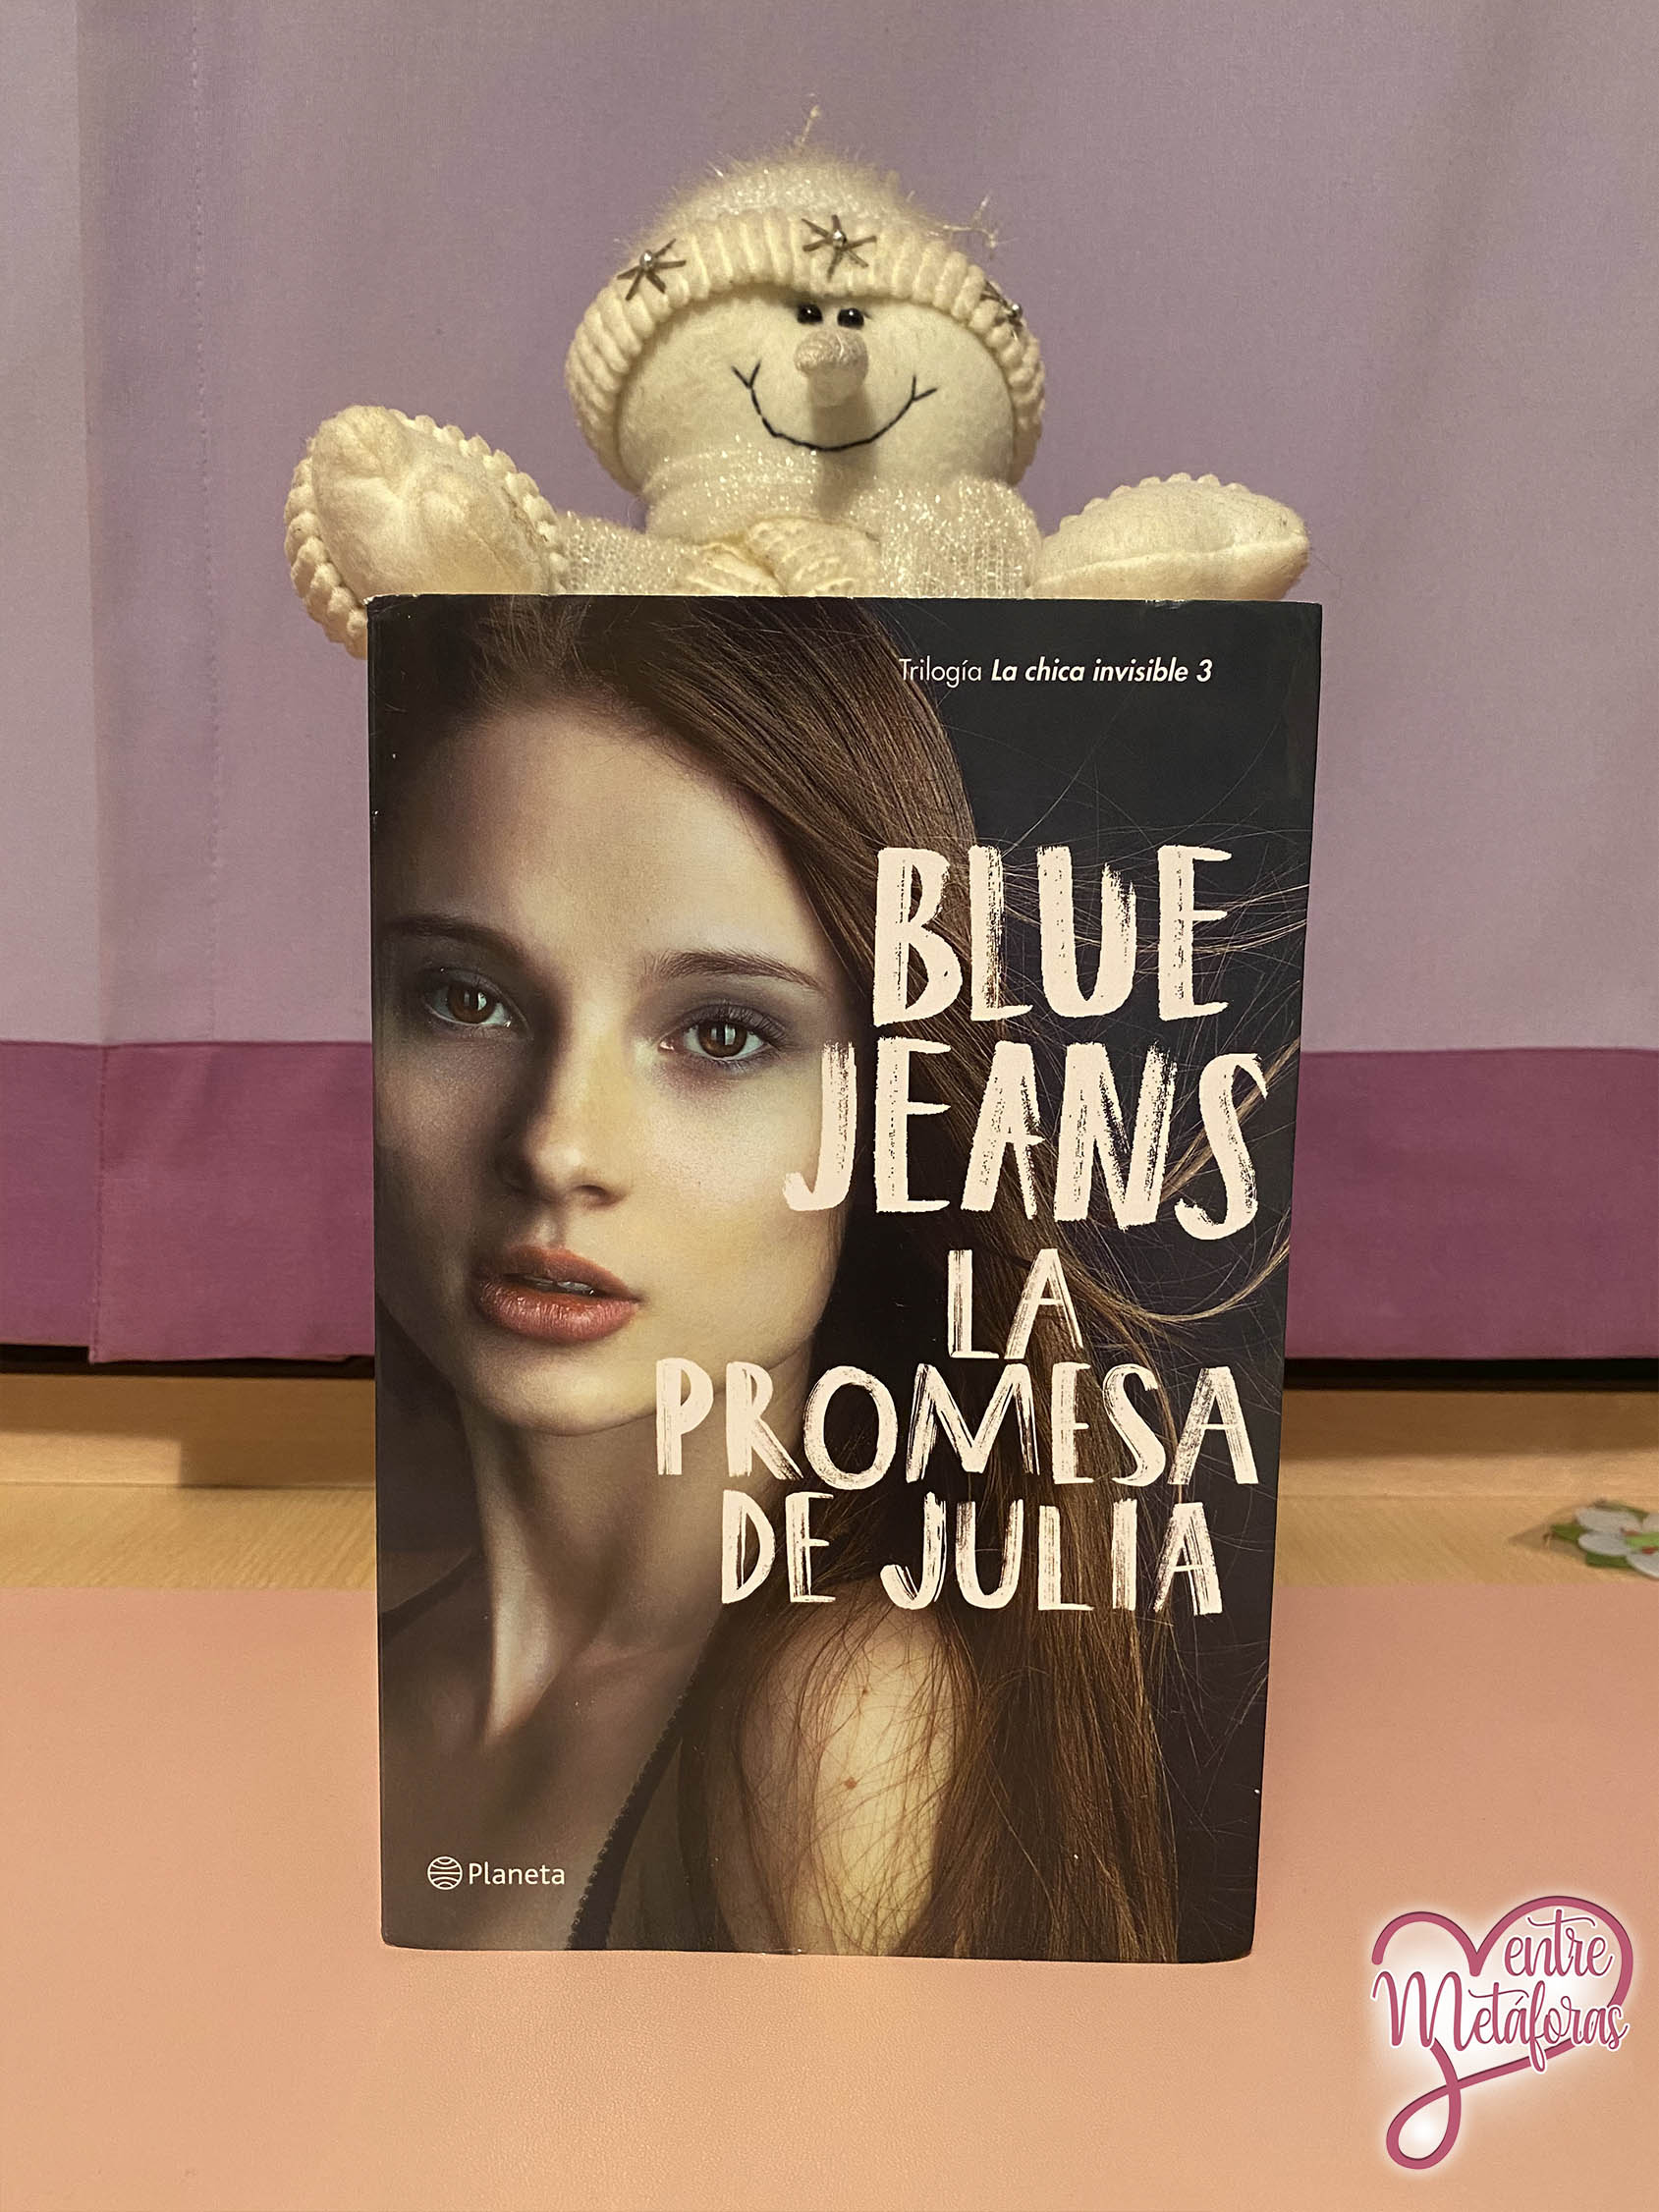 La promesa de Julia, de Blue Jeans - Reseña